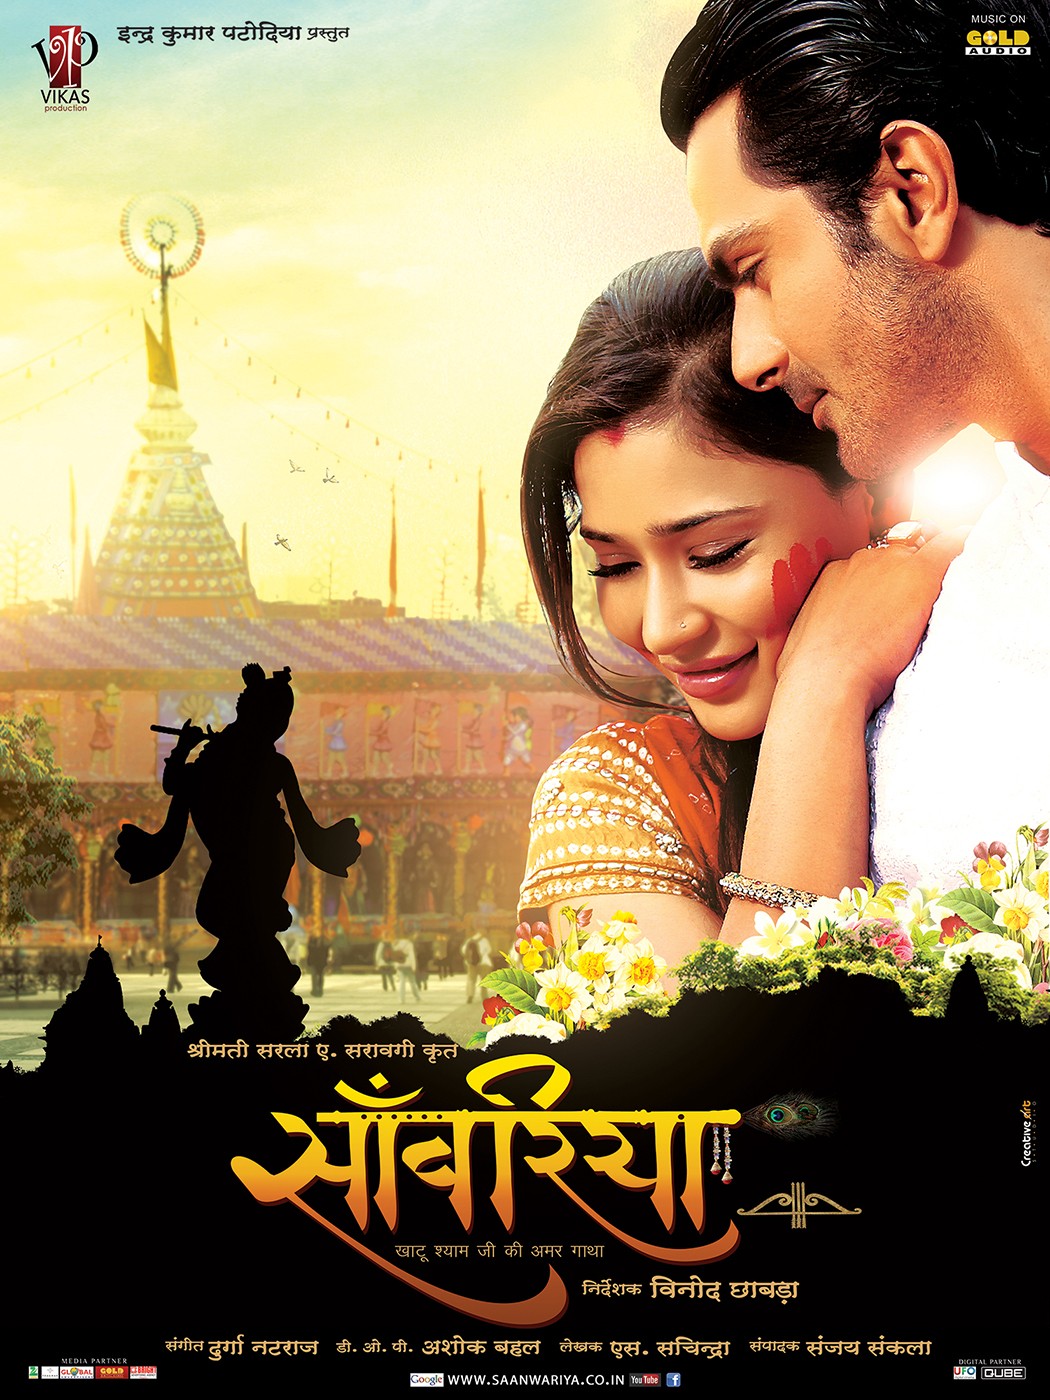 Extra Large Movie Poster Image for Saanwariya - Khatu Shyam Ji Ki Amar Gatha (#1 of 11)